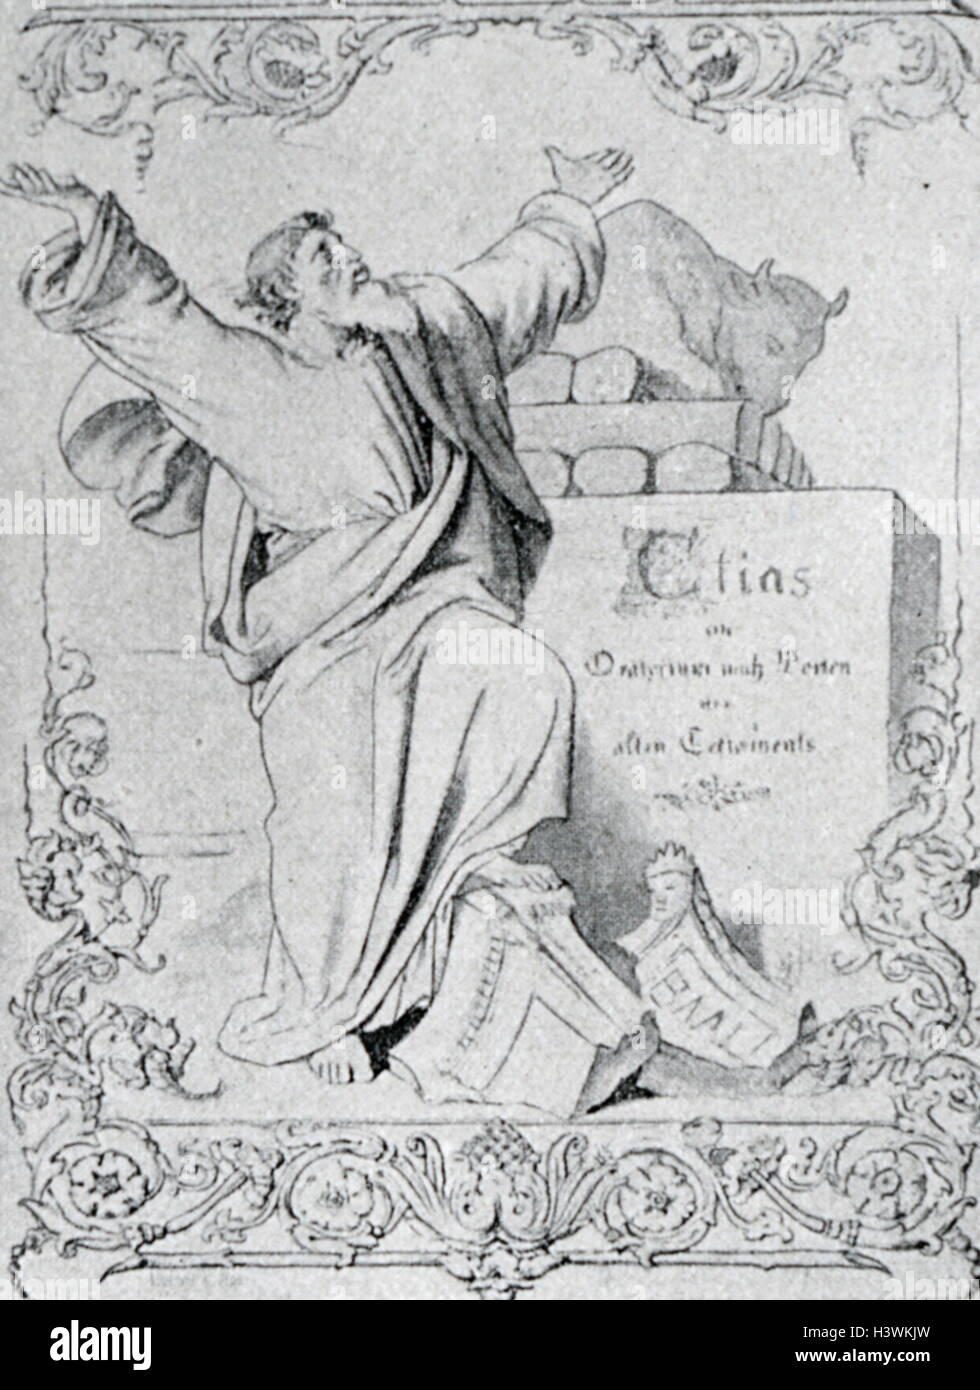 Couverture de la première édition pour Elie, un oratorio écrit par Felix Mendelssohn (1809-1847), un compositeur, pianiste, organiste et chef d'orchestre de l'époque romantique. En date du 19e siècle Banque D'Images